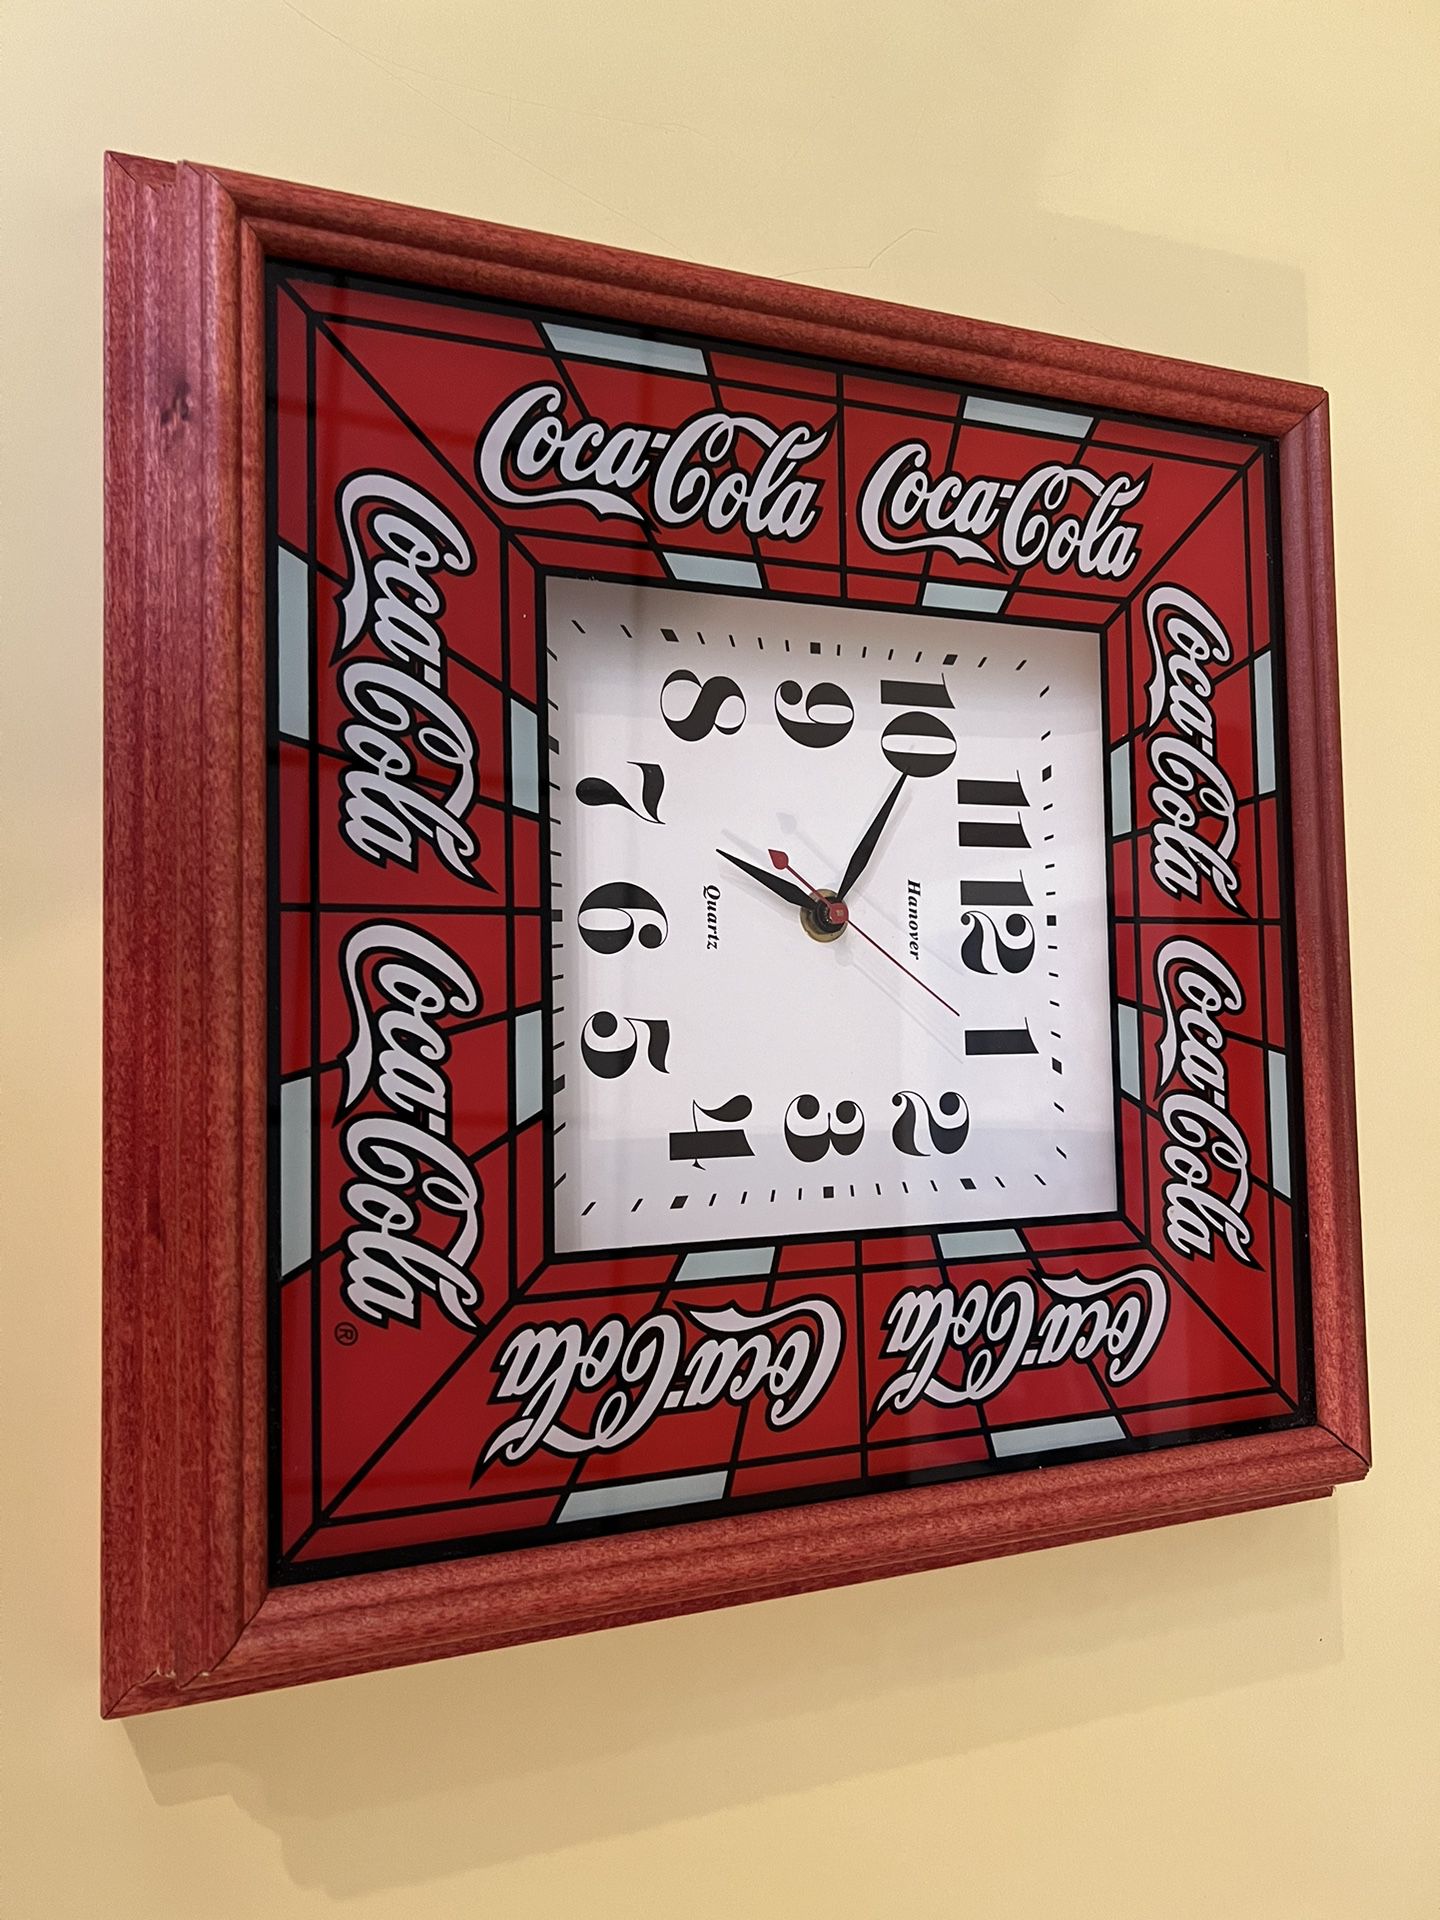 Coca Cola Wall Clock